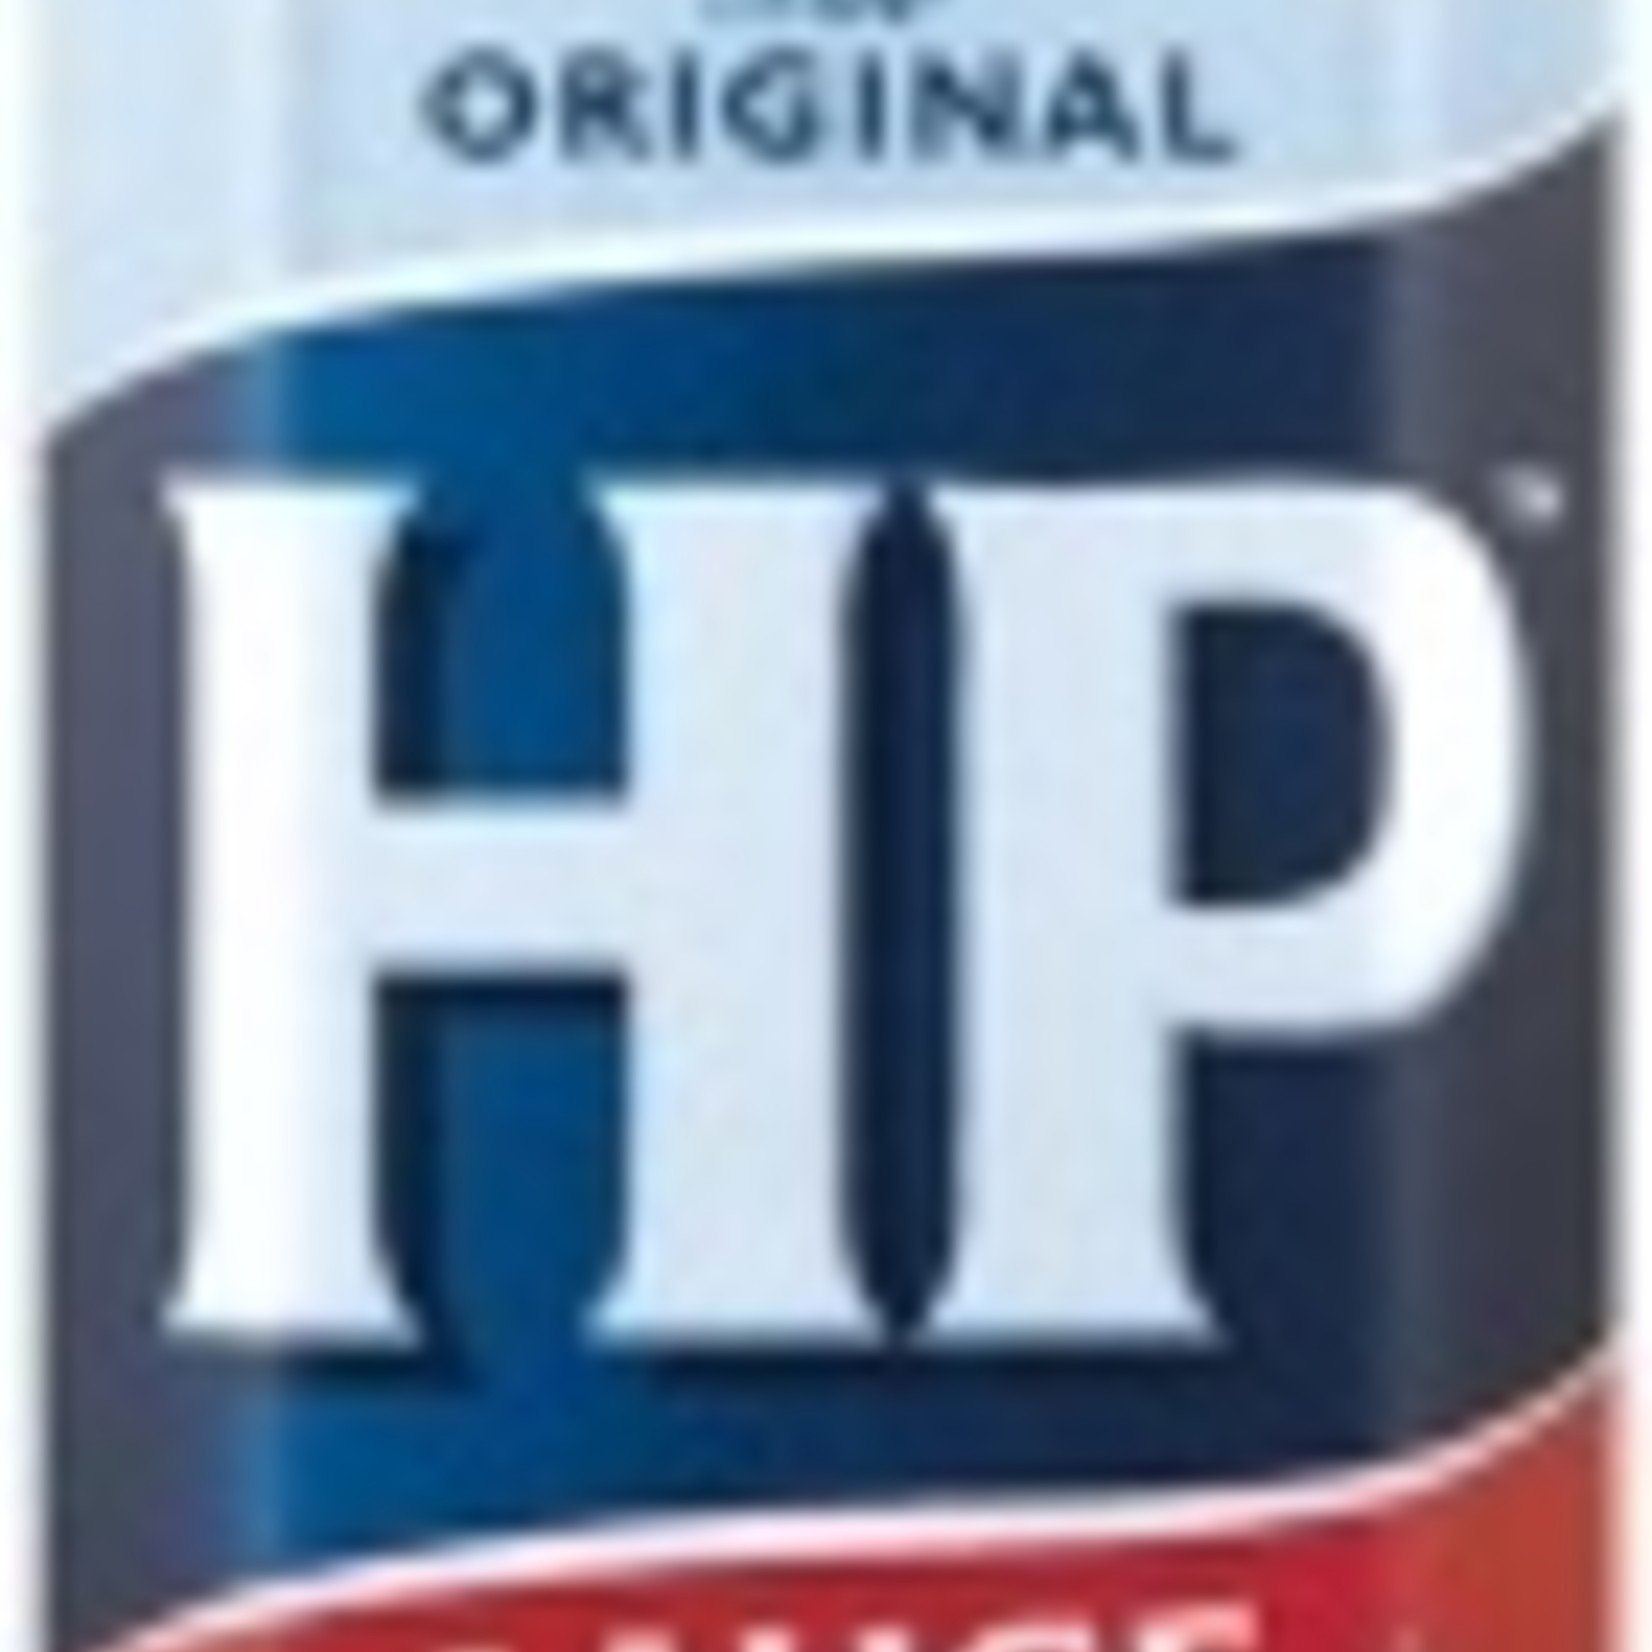 HP HP Sauce 255g Bottle